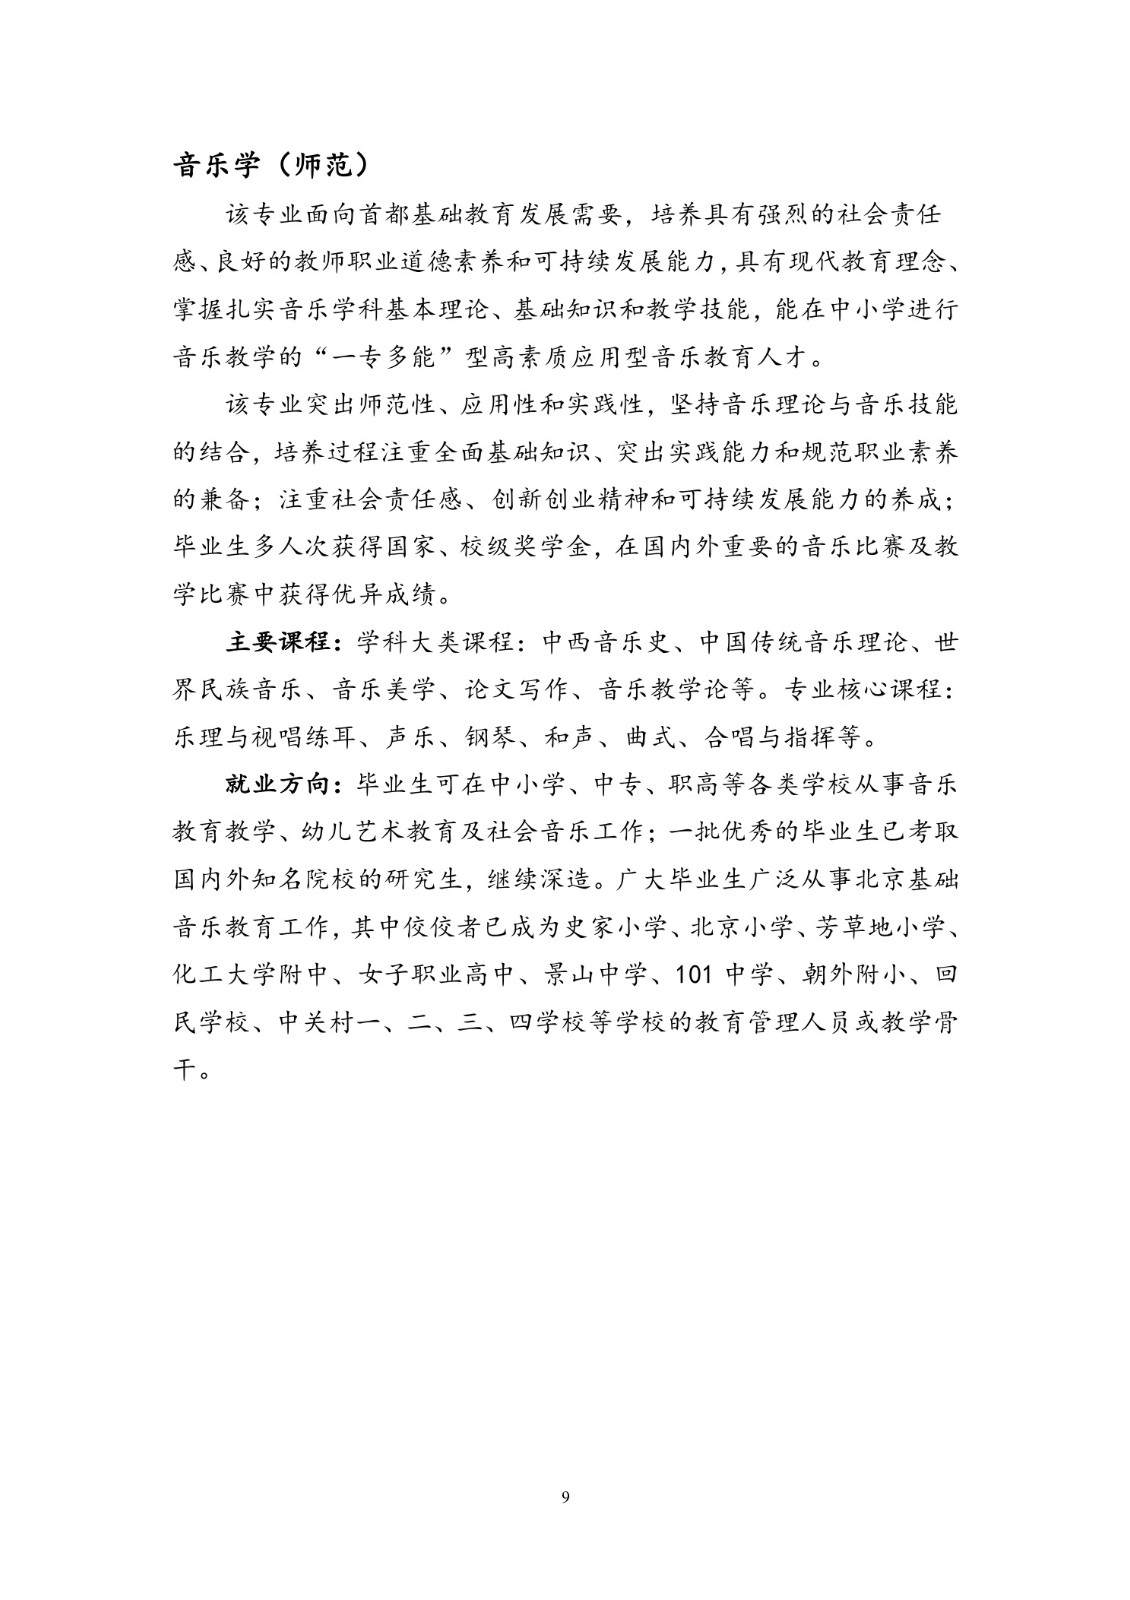 北京联合大学2018年艺术类招生简章20180103-page9 2.jpeg